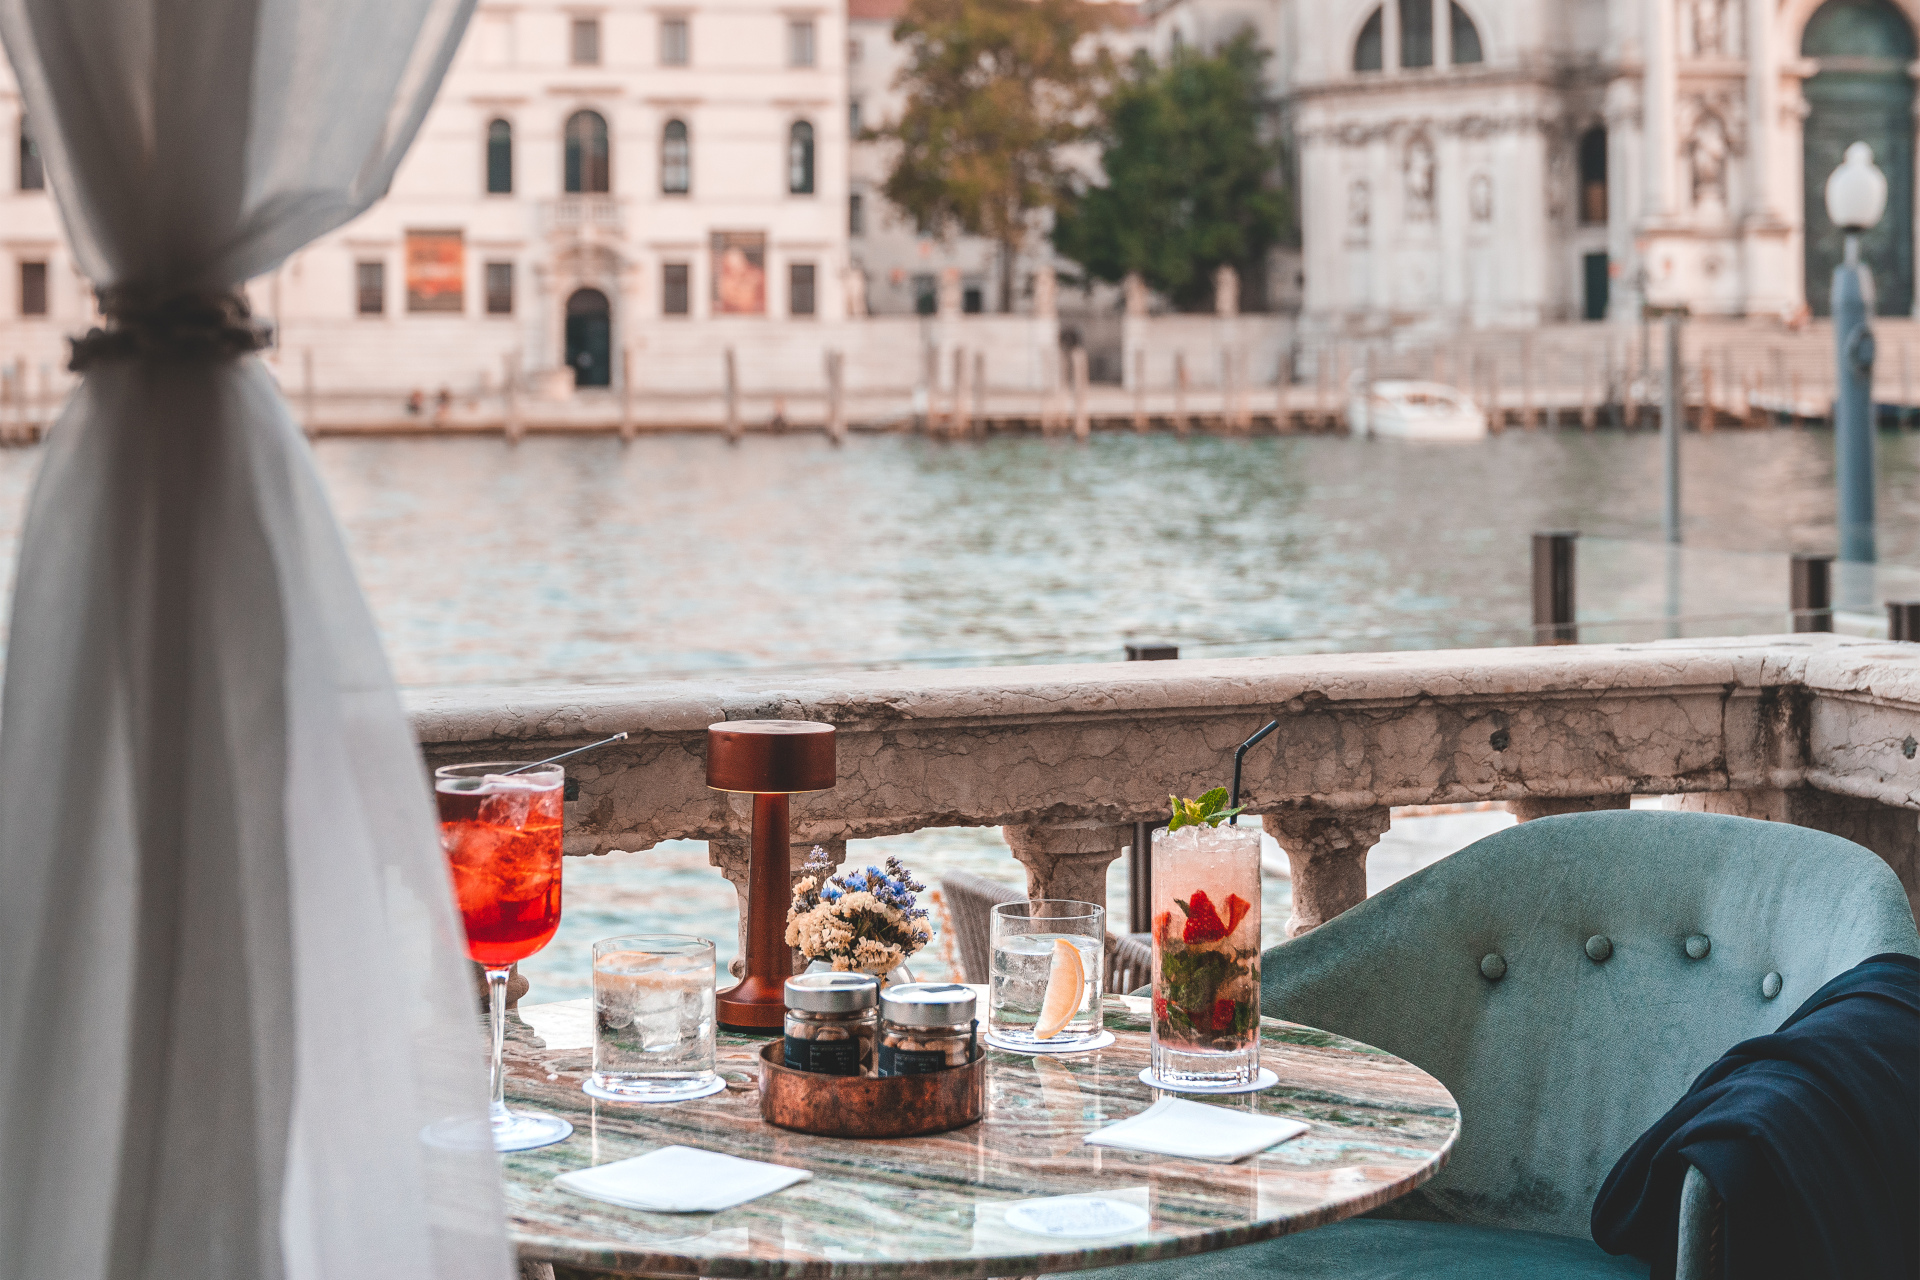 Table on balcony overlooking Venetian canal